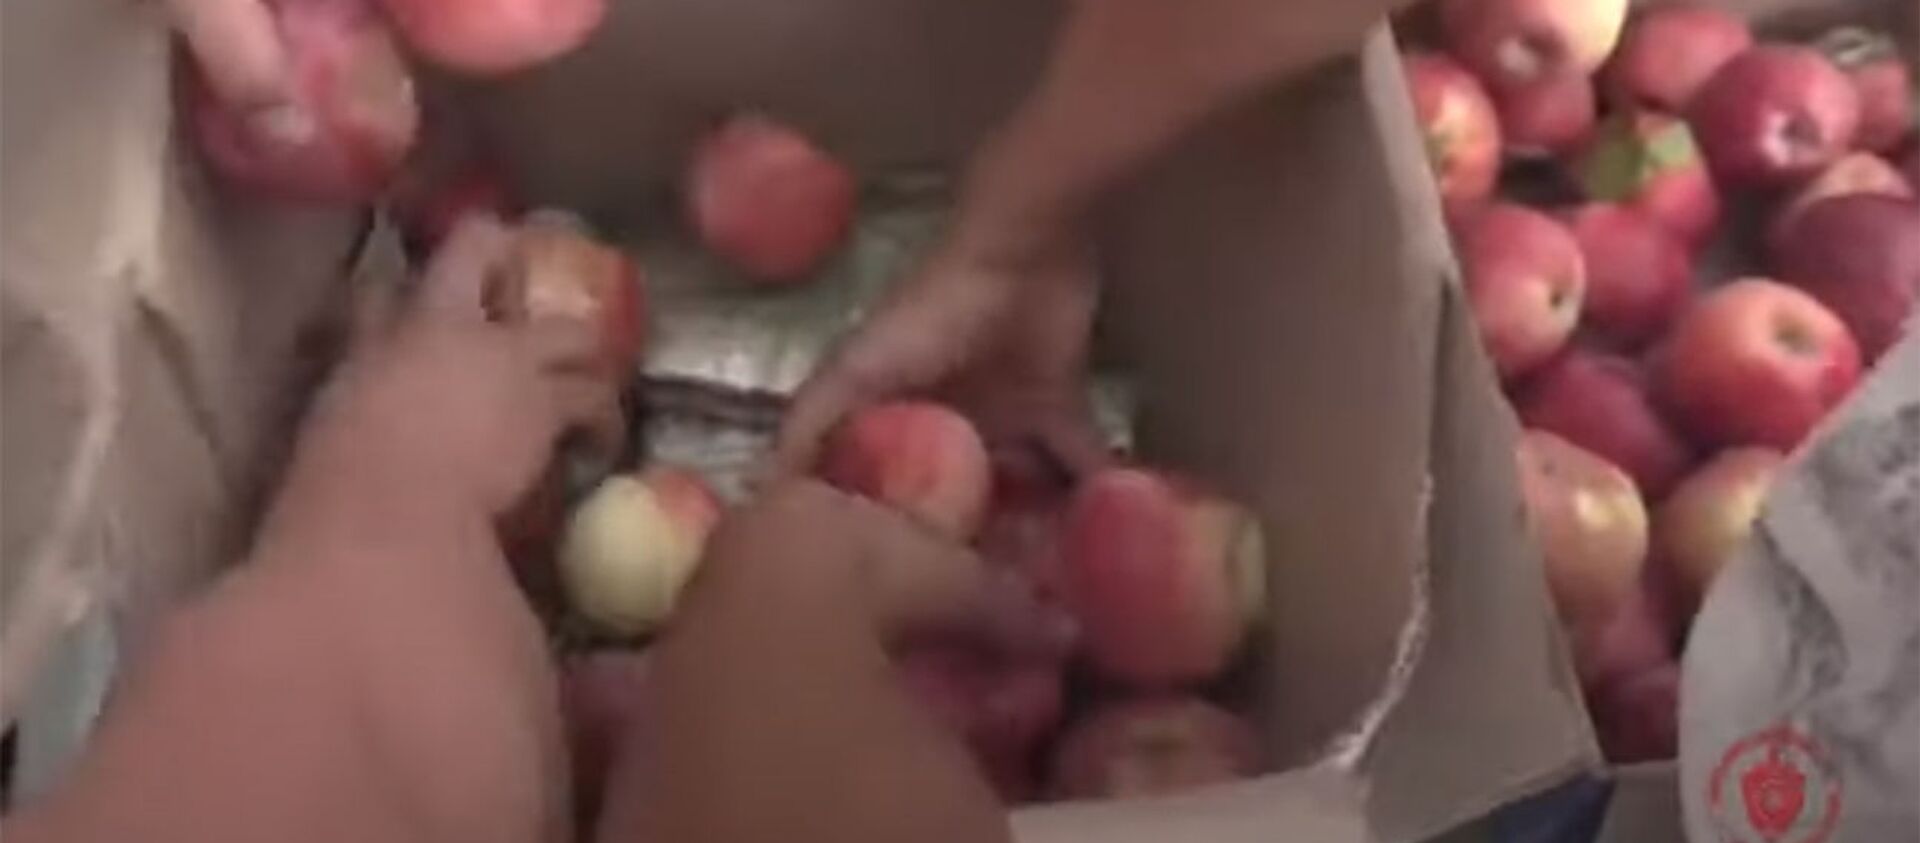 Около 3 кг гашиша спрятали в коробке с яблоками в магазине Бишкека. Видео - Sputnik Кыргызстан, 1920, 15.10.2021